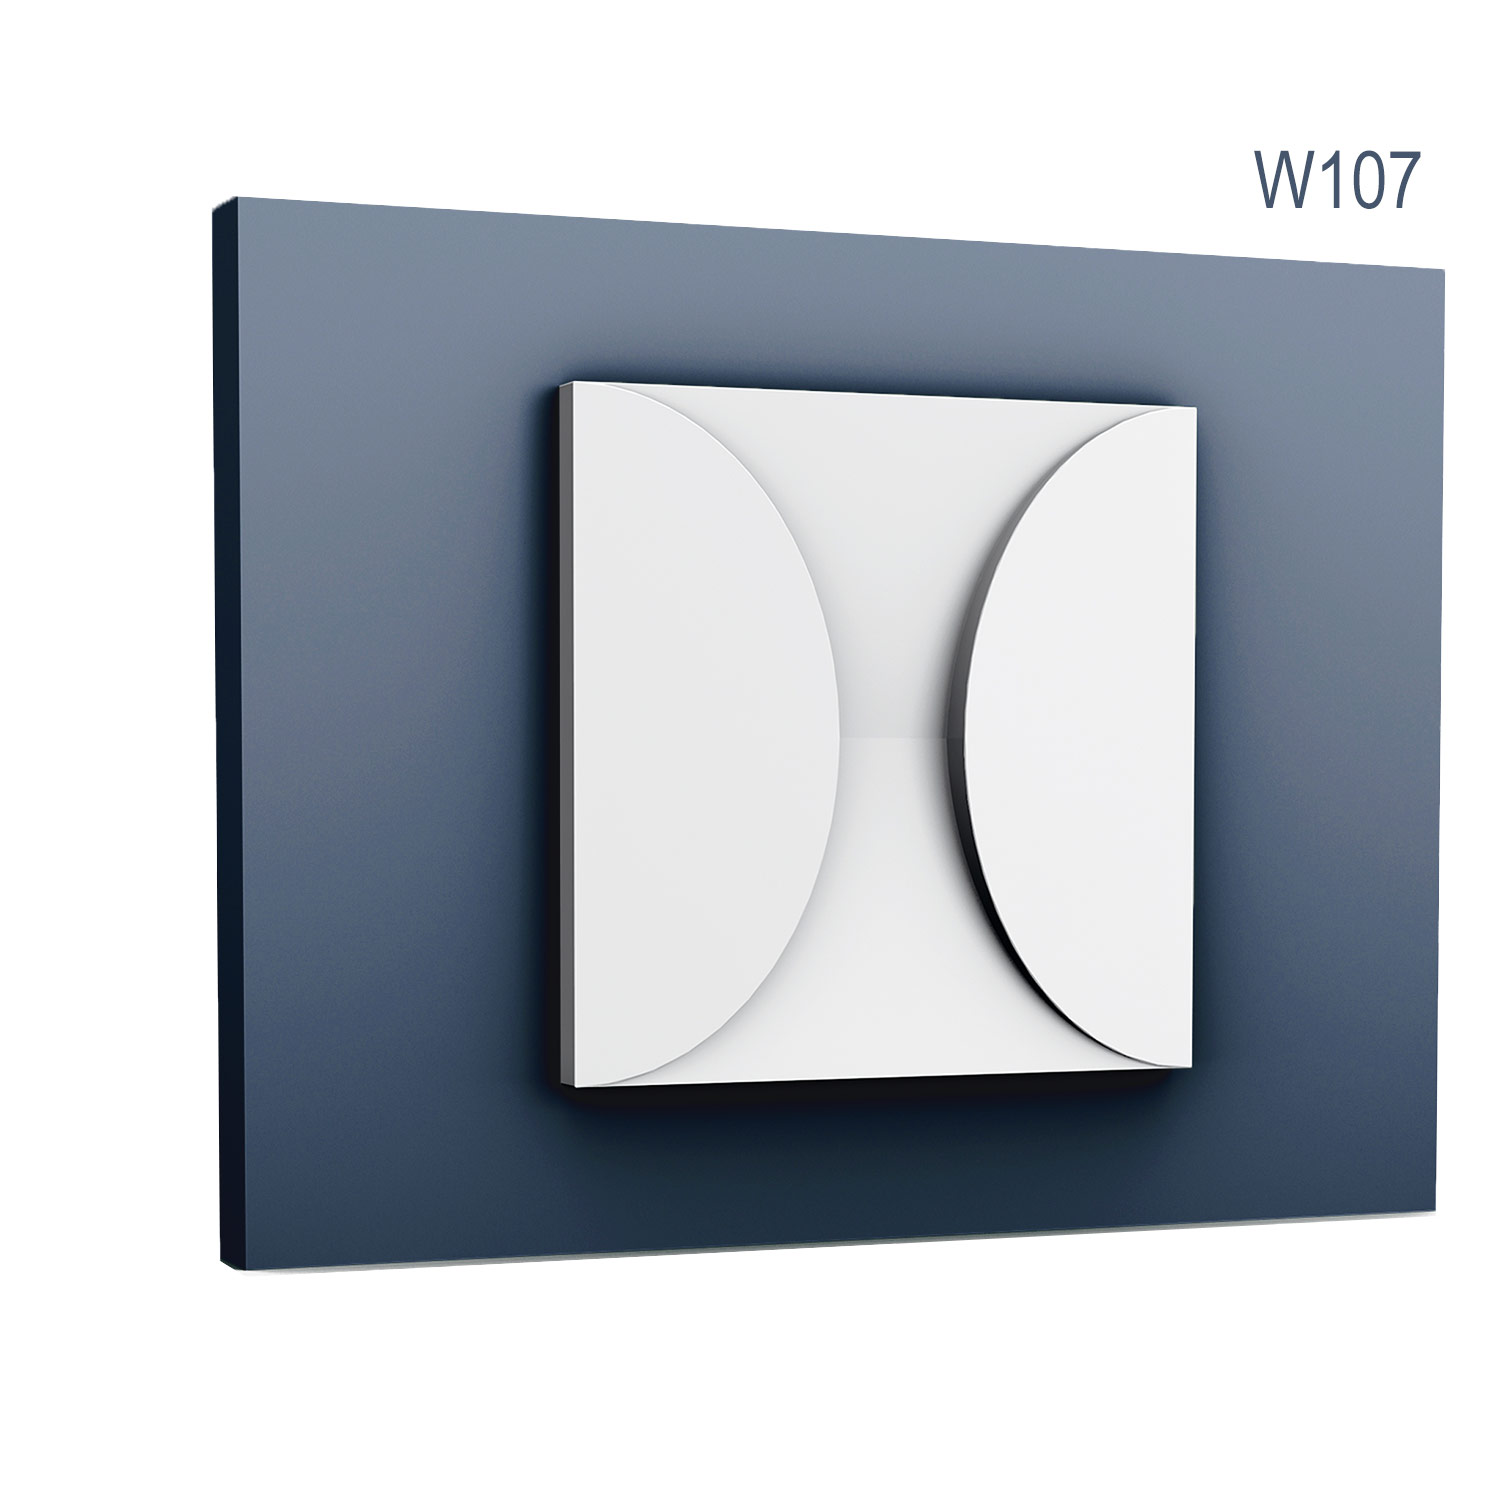 Panel Modern W107, Dimensiuni: 33.3 X 33.3 X 2.9 cm, Orac Decor